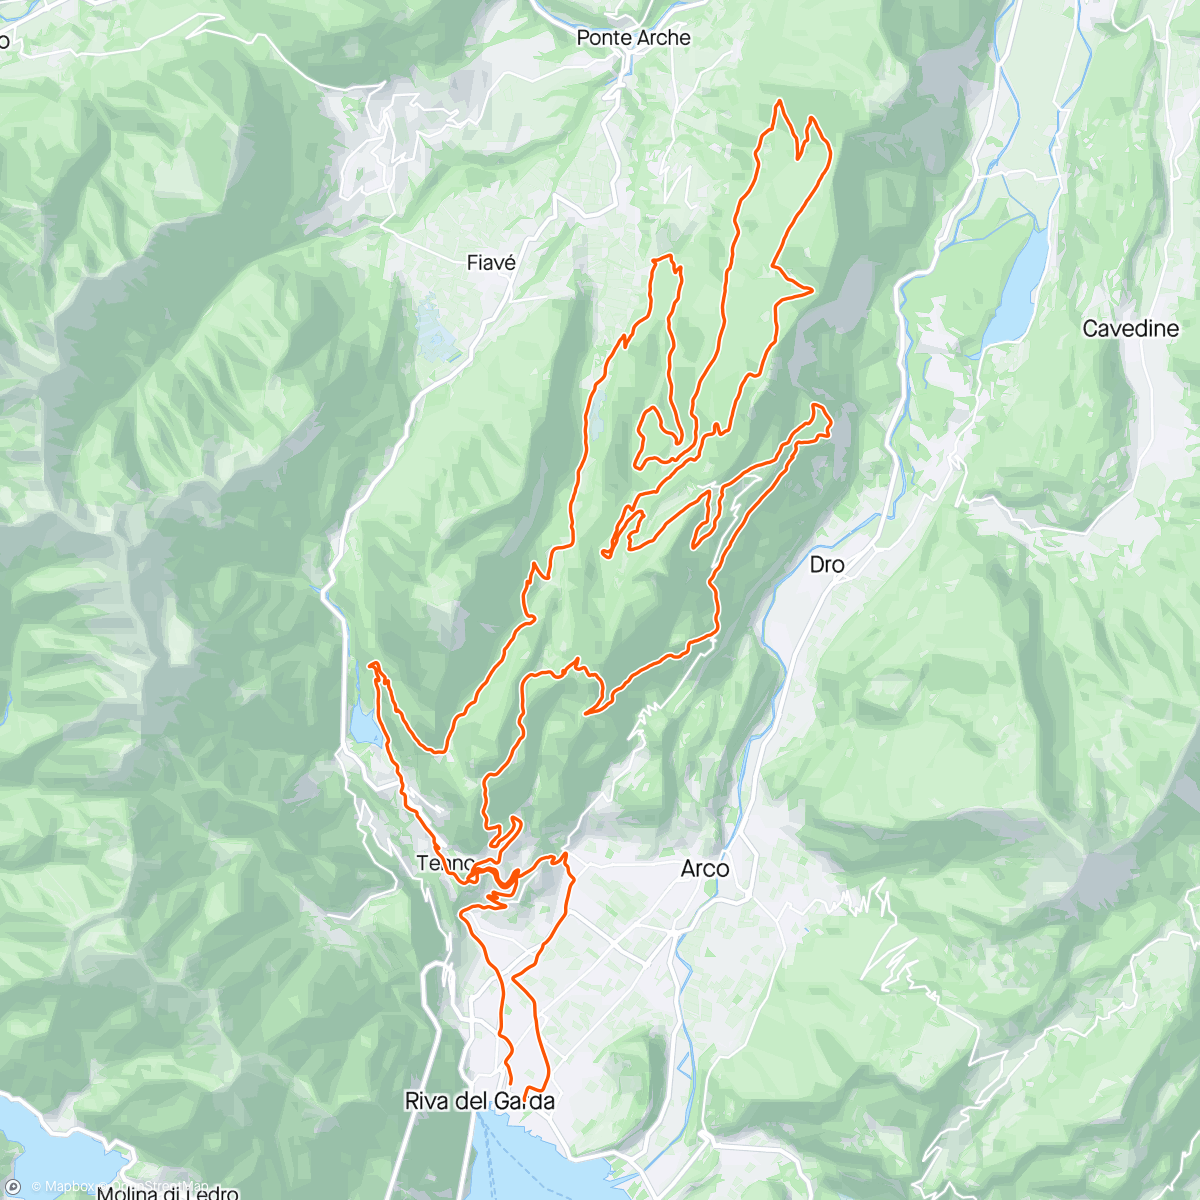 アクティビティ「Bike Festival Riva del Garda」の地図